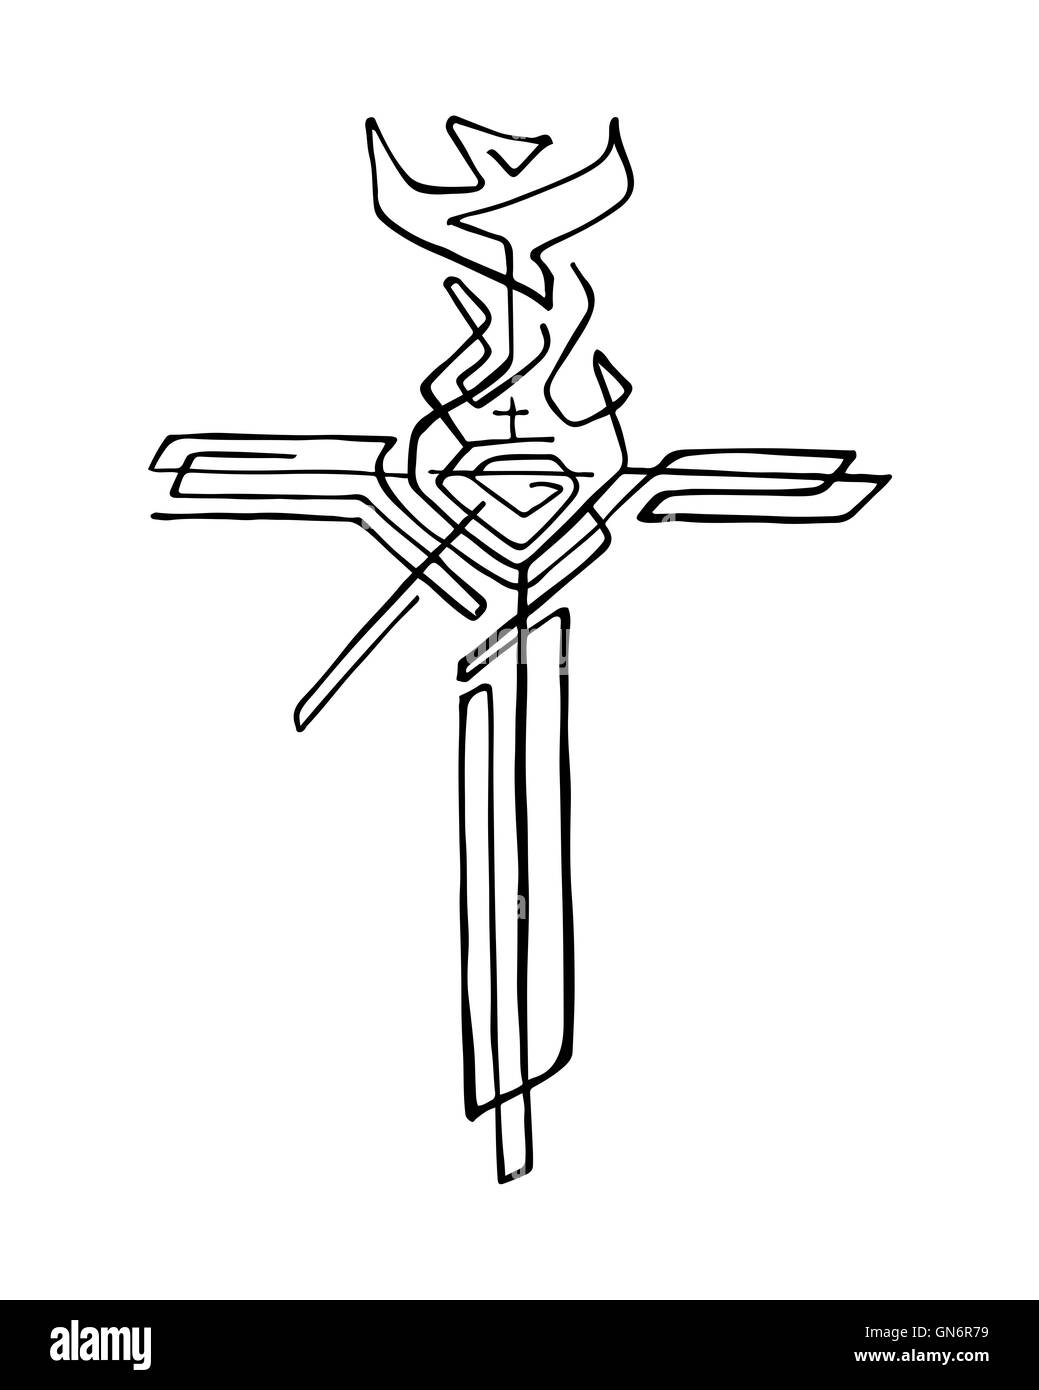 Illustration à la main ou d'un dessin d'une croix avec différents symboles religieux Banque D'Images